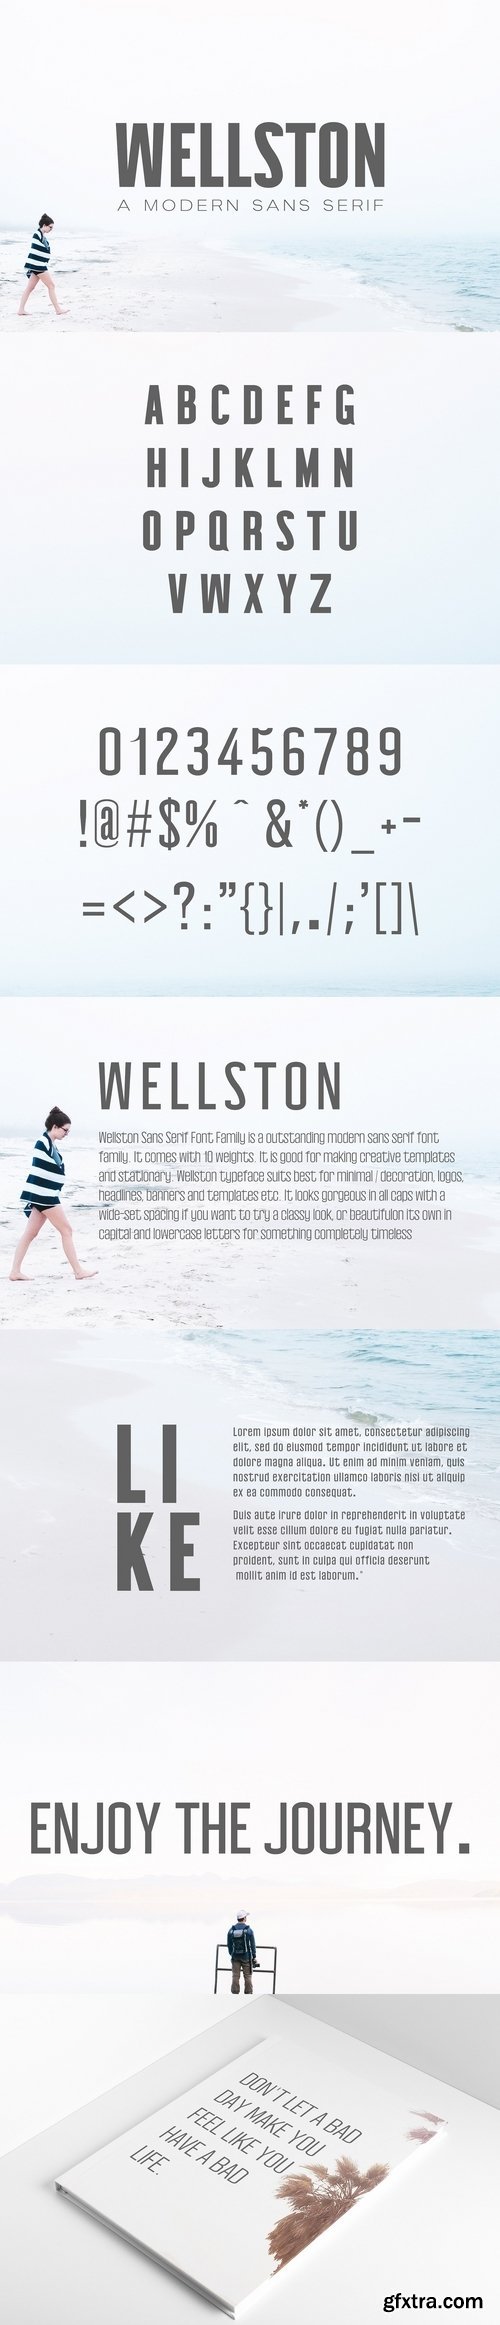 Wellston Modern Sans Serif Font 2967139